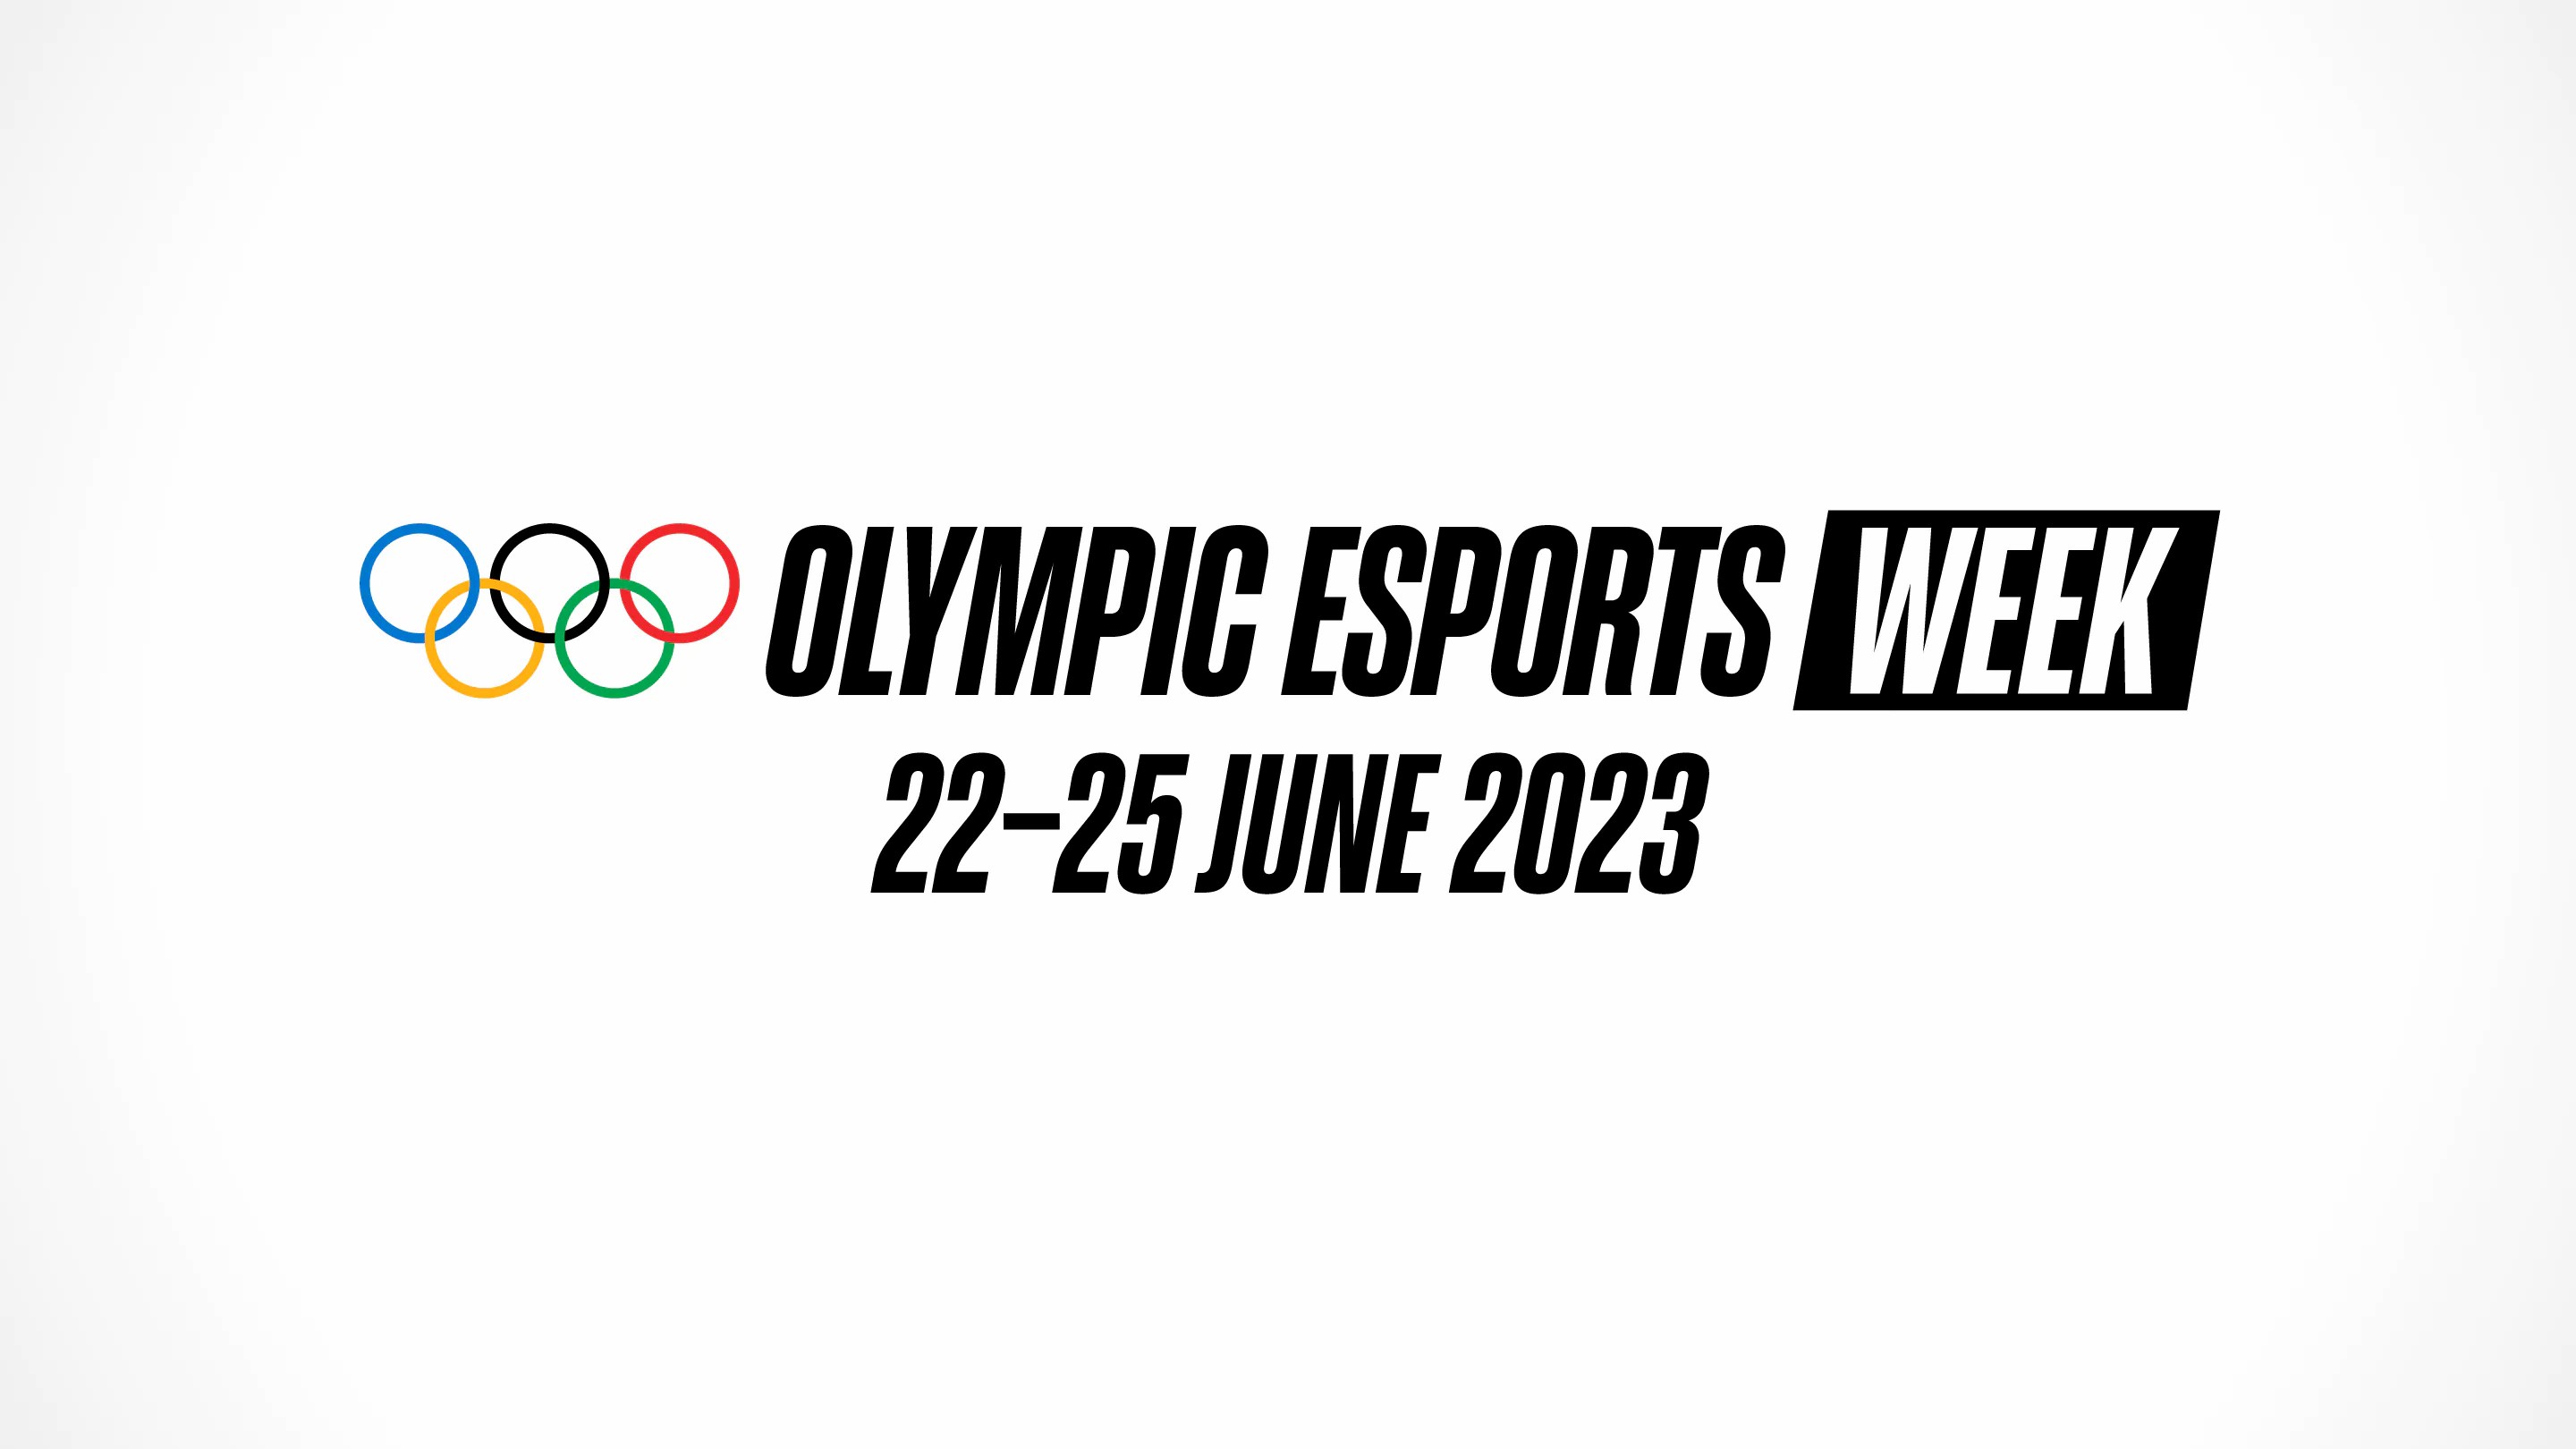 国际奥委会宣布首届奥林匹克电子竞技周 2023年在新加坡举办